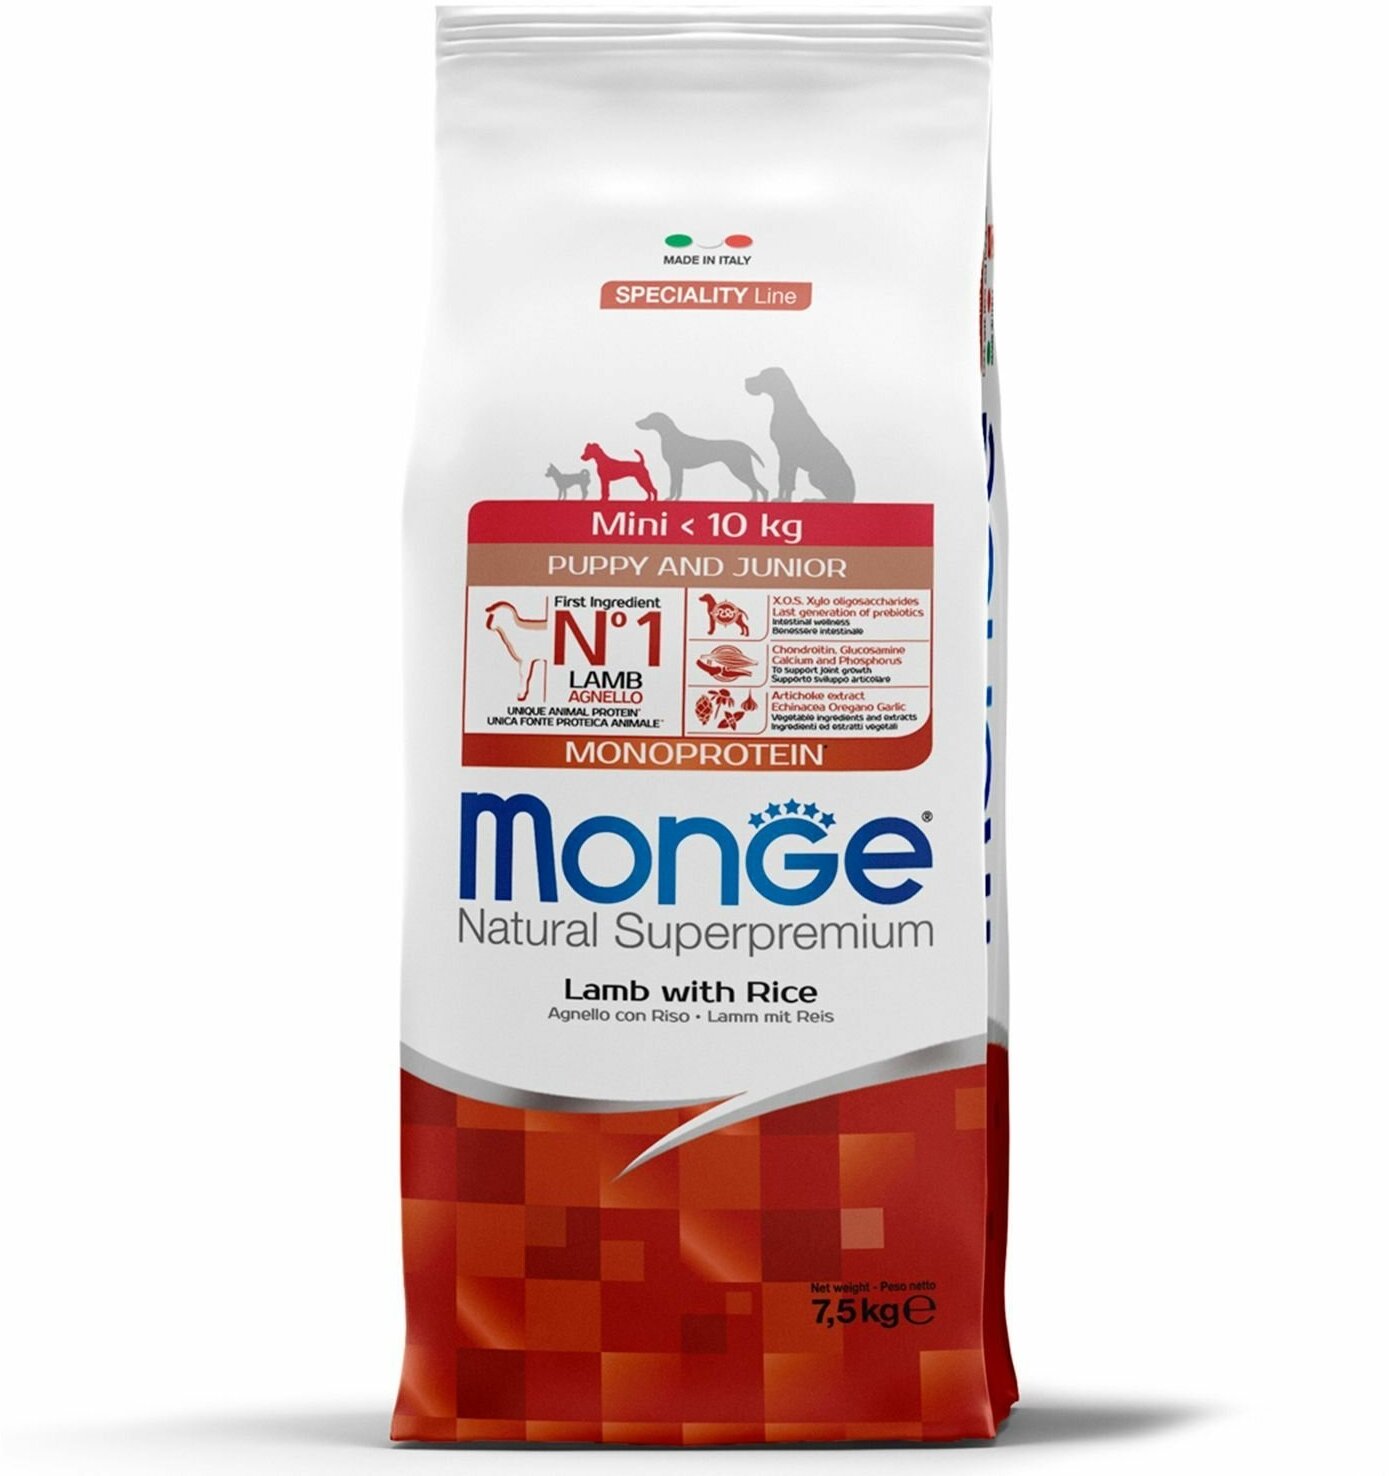 Сухой корм Monge Dog Speciality Line Monoprotein Mini корм для щенков и беременных собак мелких пород, из ягненка с рисом 7,5 кг